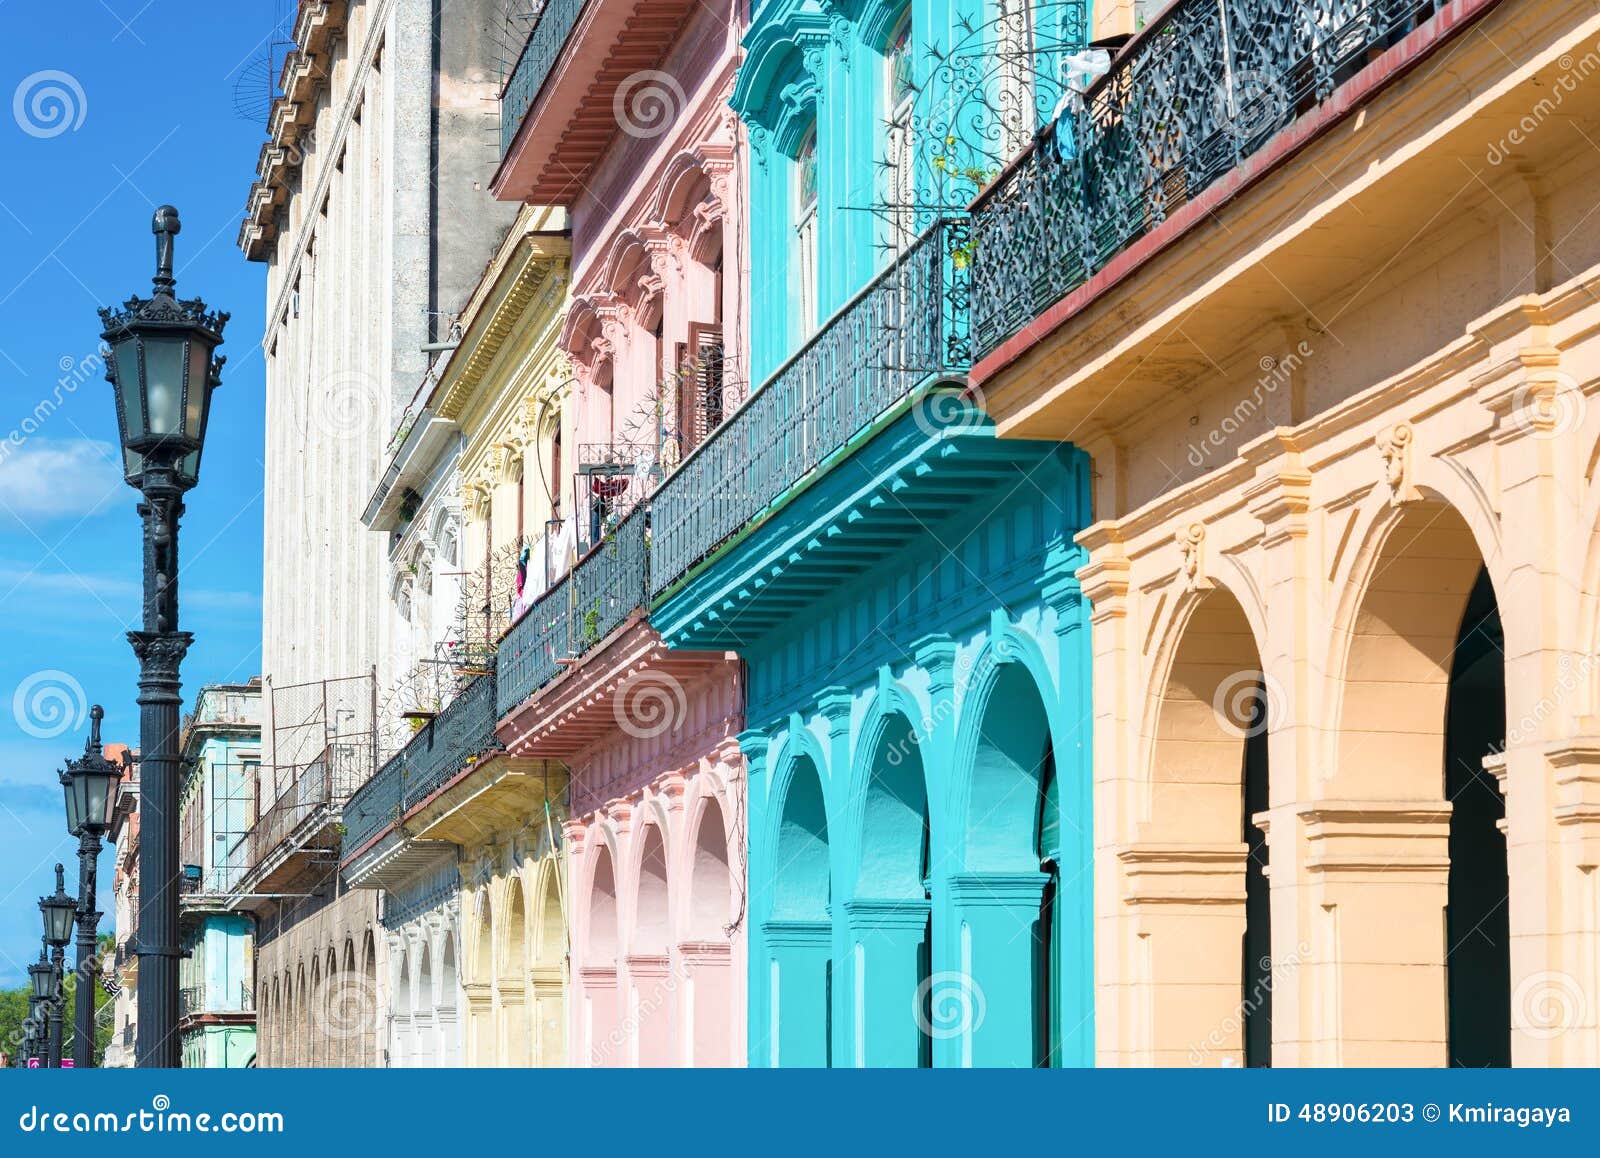 colorful buildings in old havana